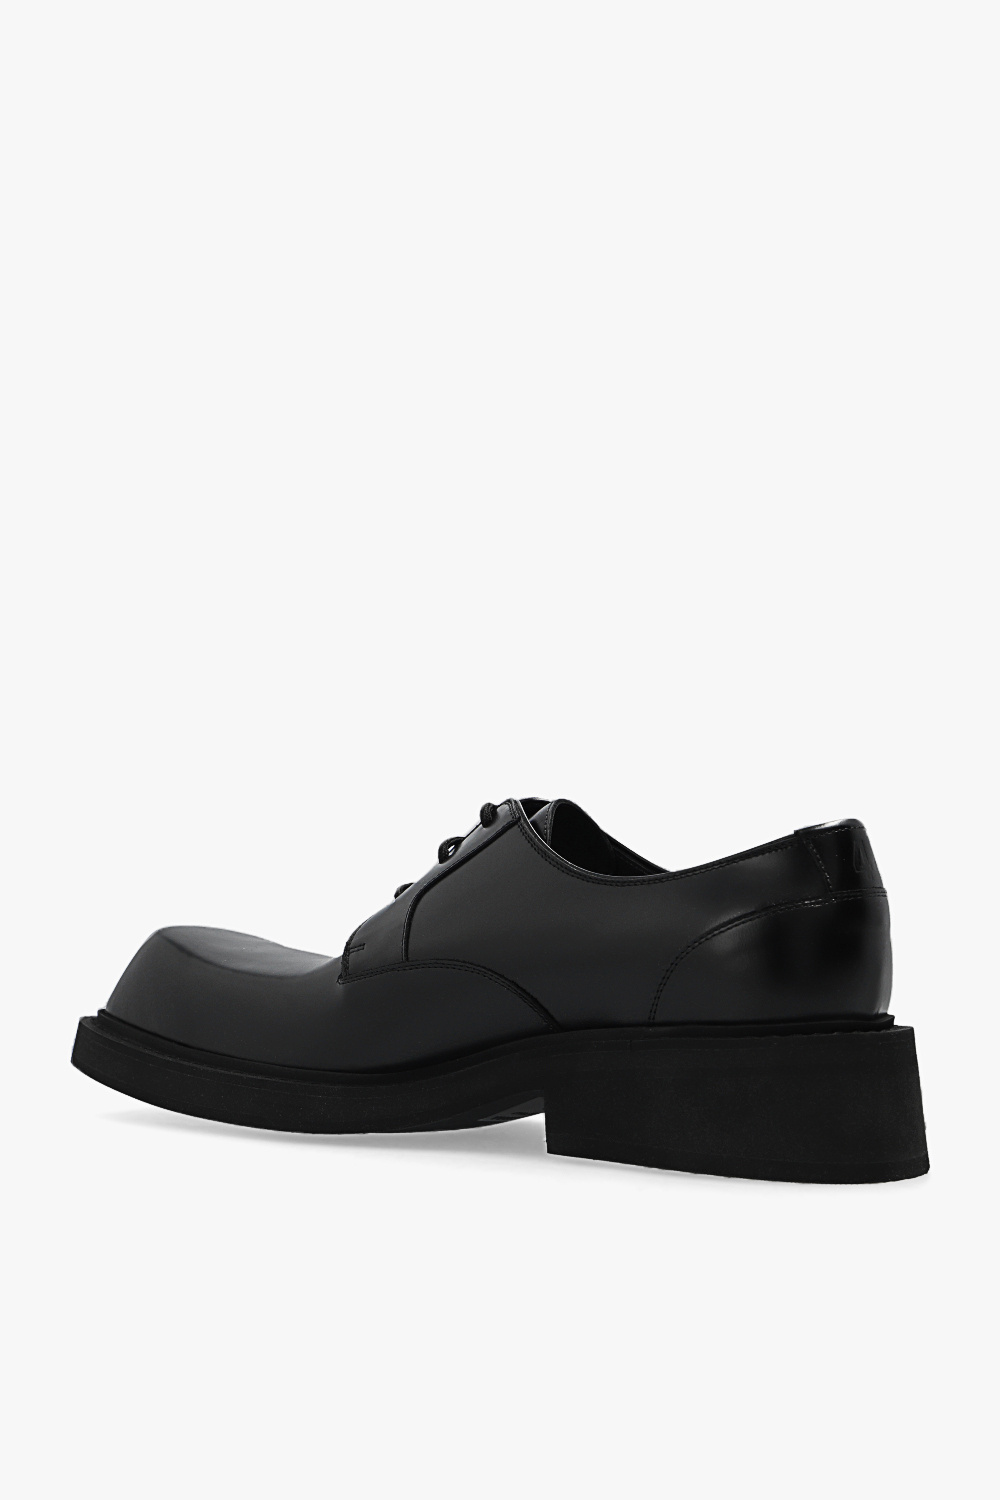 ‘Inspector’ Derby shoes Balenciaga - Vitkac Spain